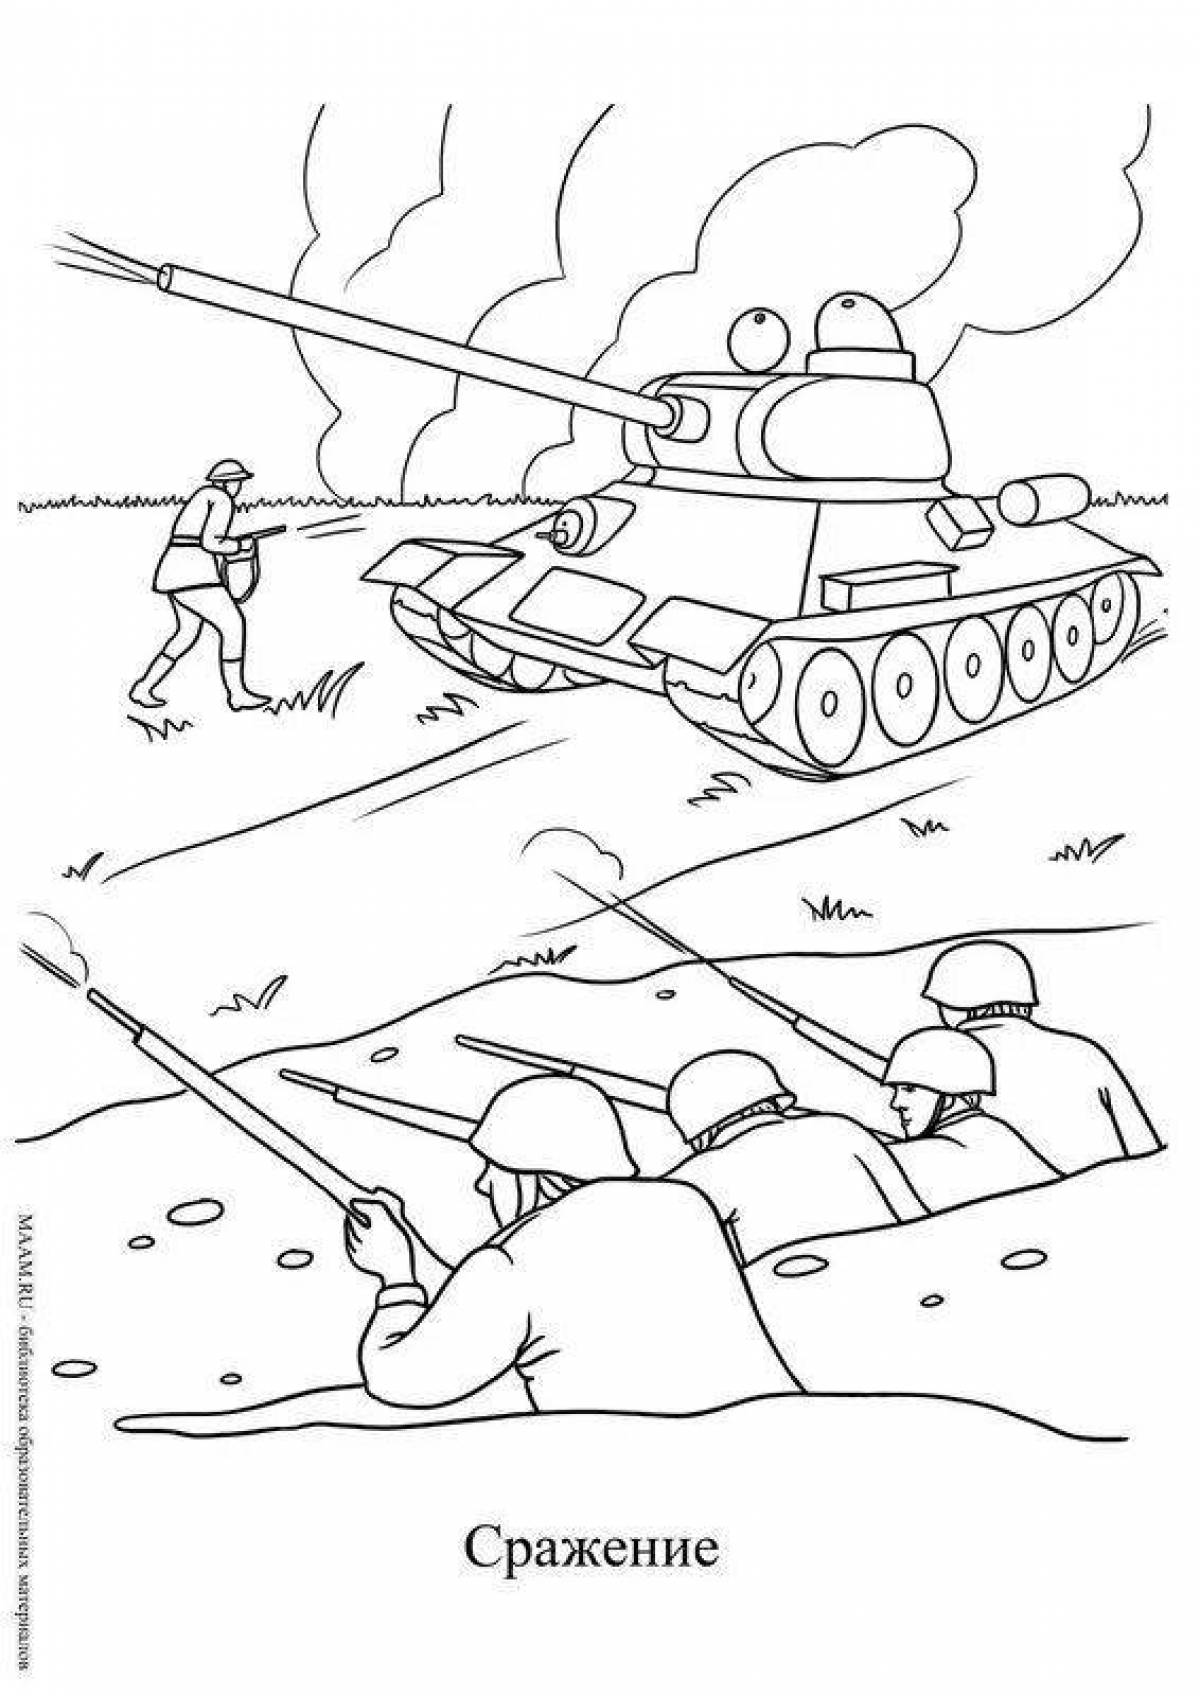 Увлекательный военный рисунок